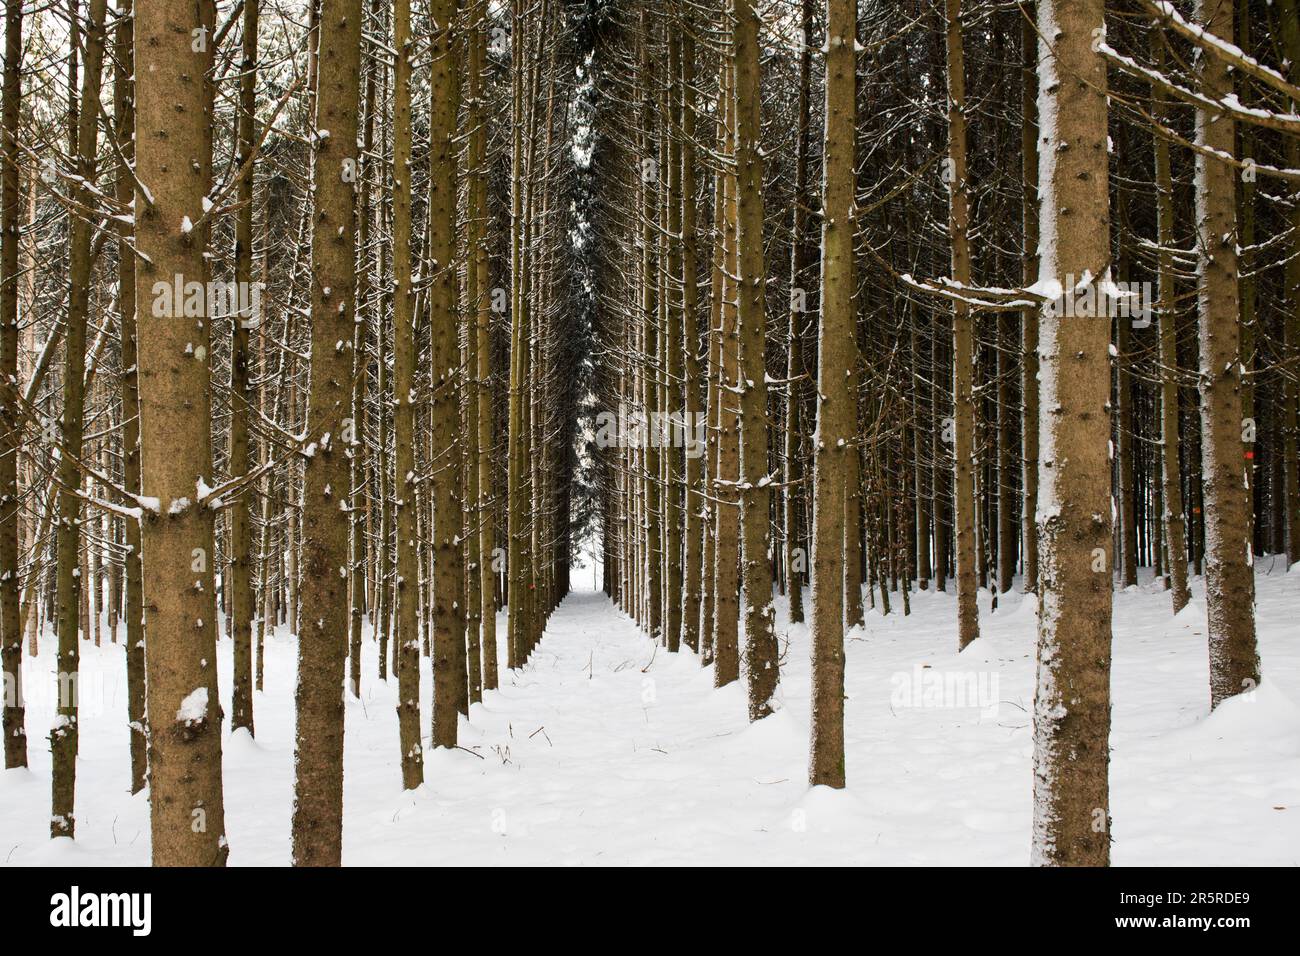 Un paysage d'hiver avec une grande étendue de terrain enneigé, parsemé d'arbres de différentes espèces de vert Banque D'Images